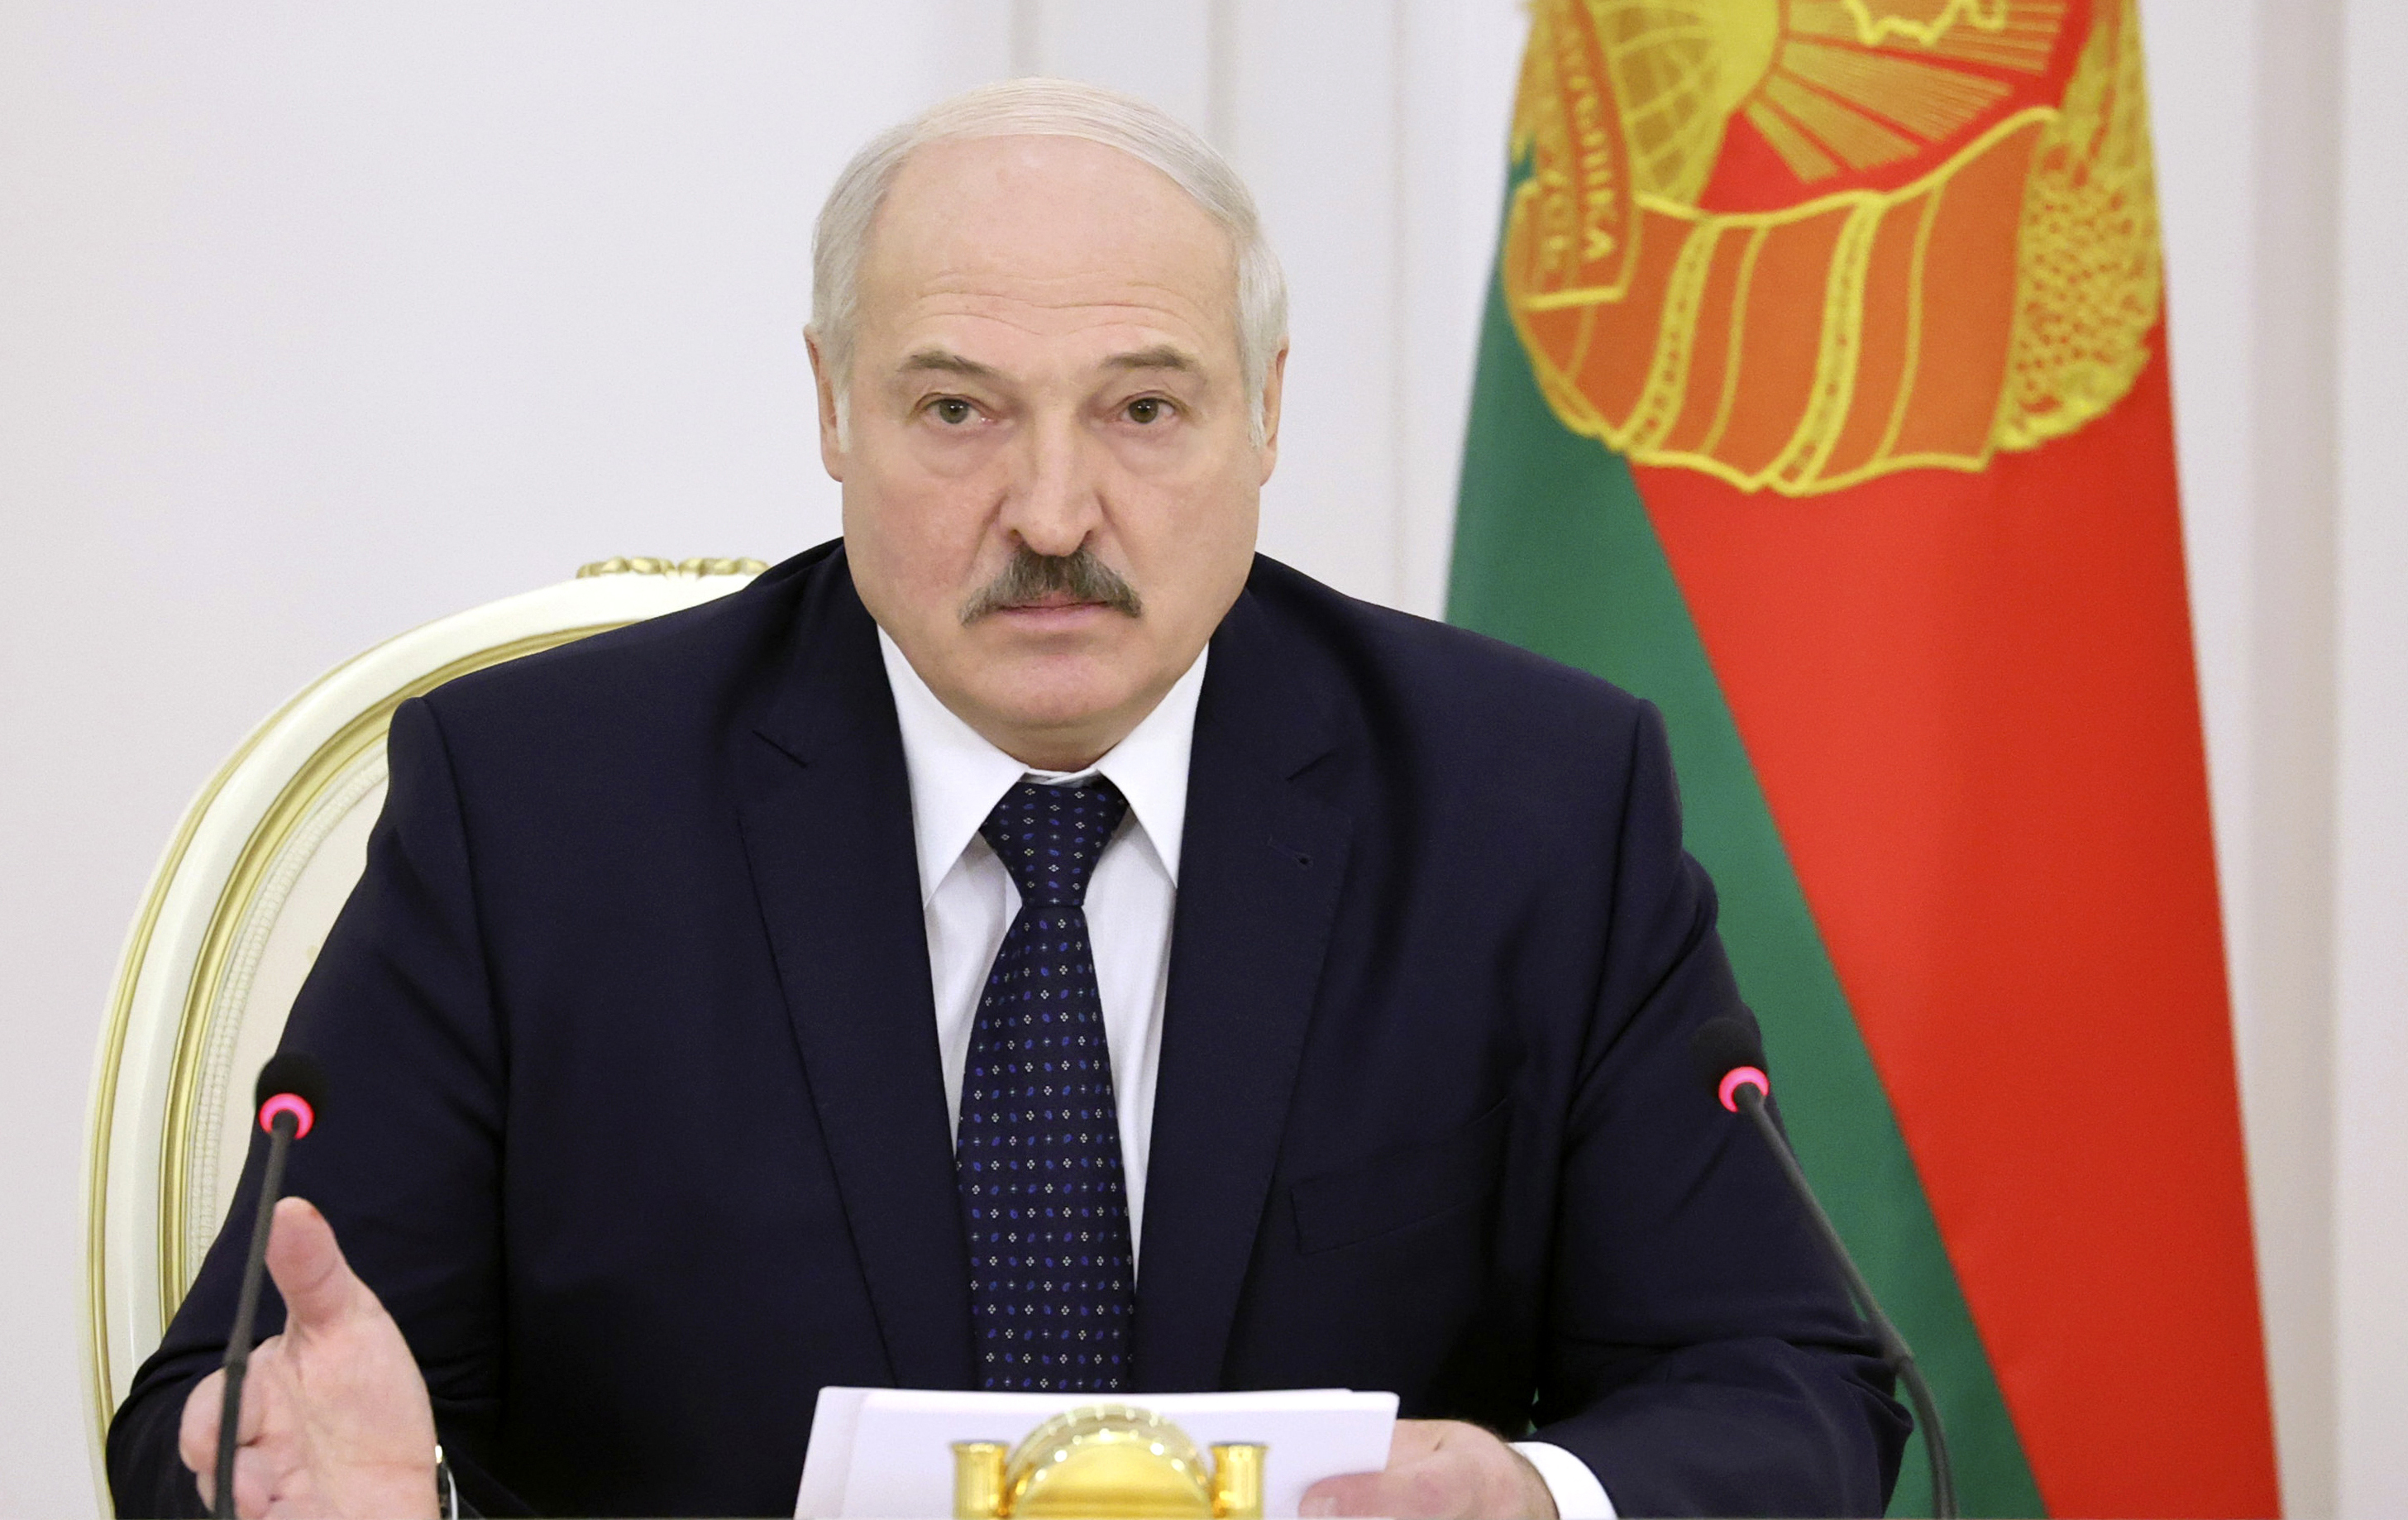 독재자는 오지마” 벨라루스 대통령 루카셴코, 올림픽 참석금지